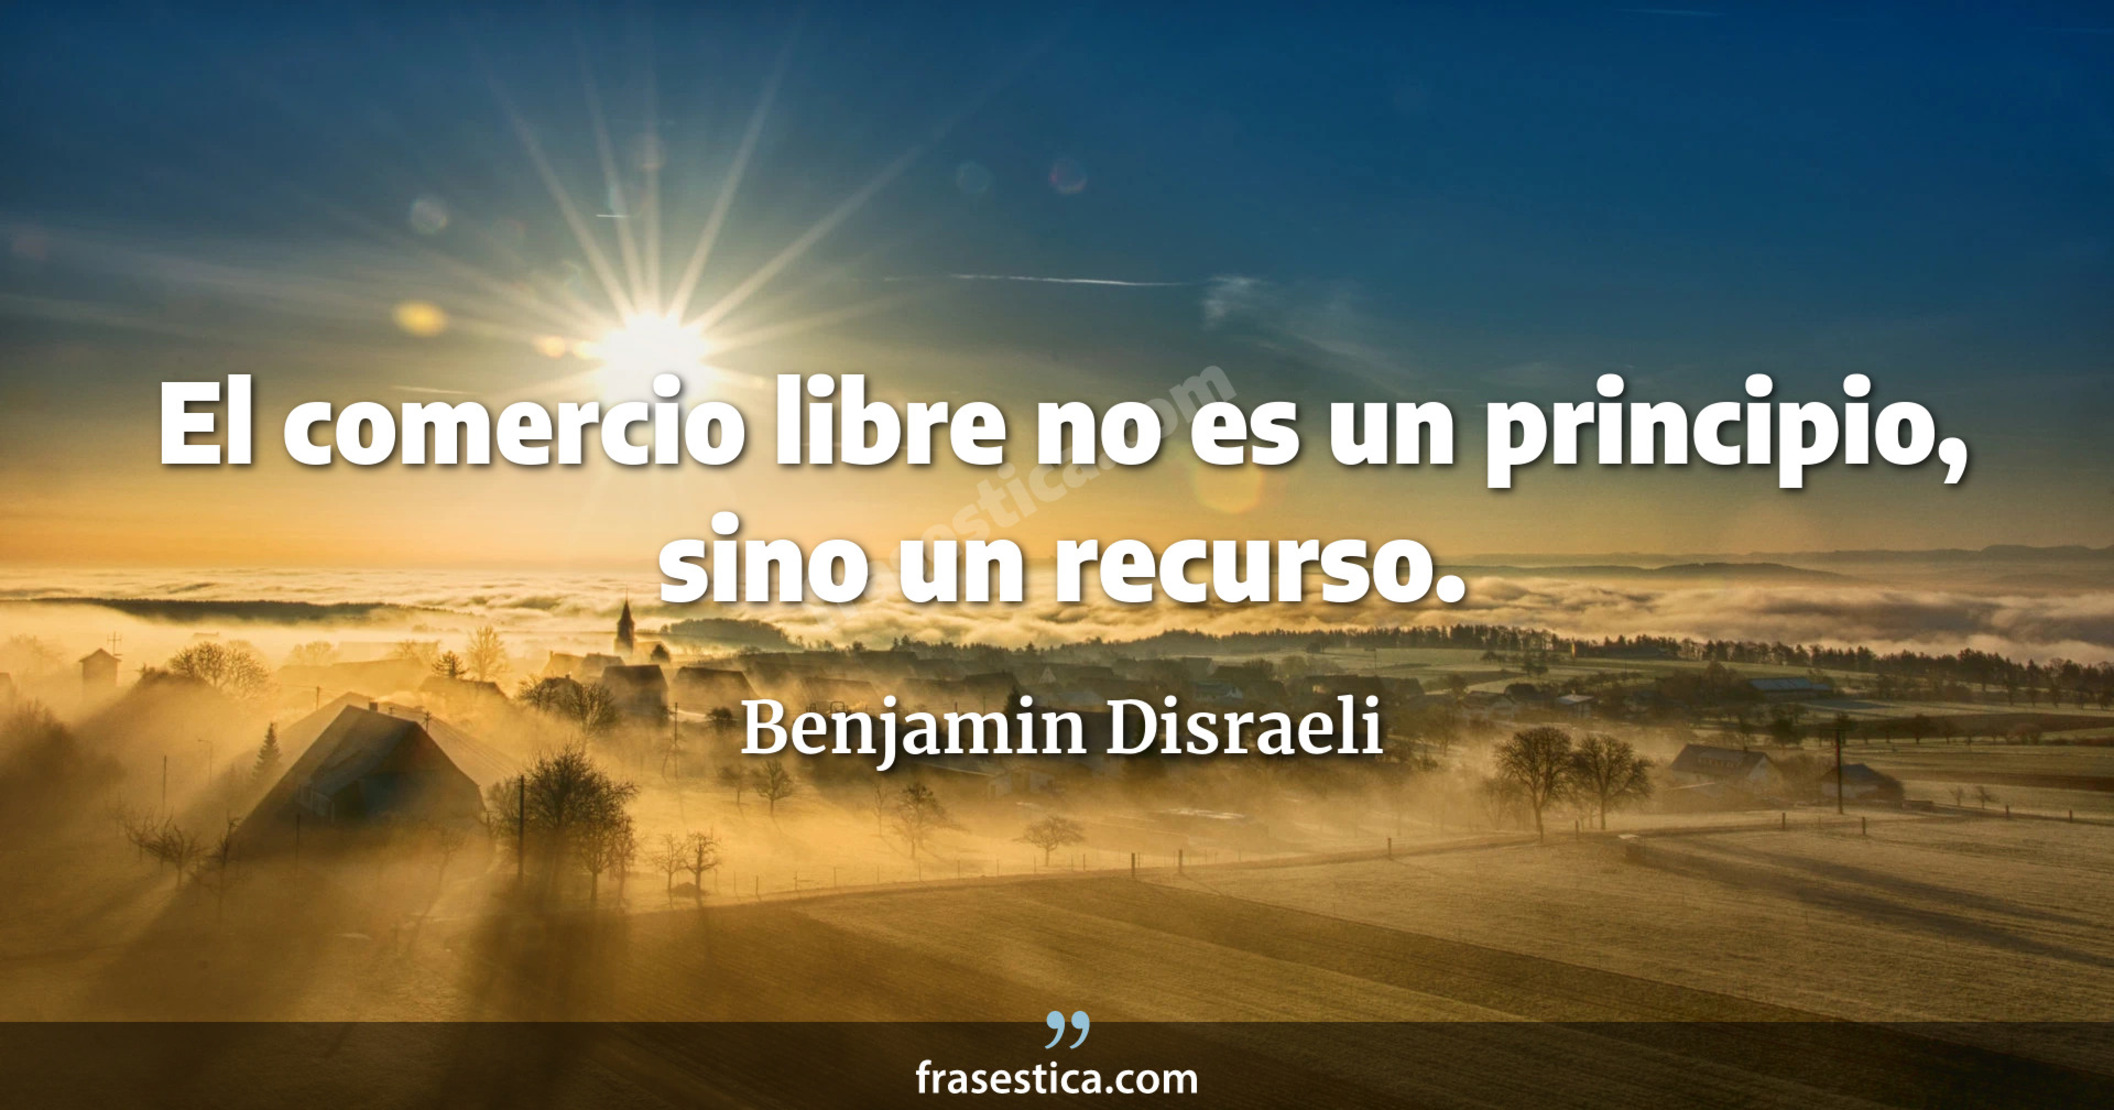 El comercio libre no es un principio, sino un recurso. - Benjamin Disraeli